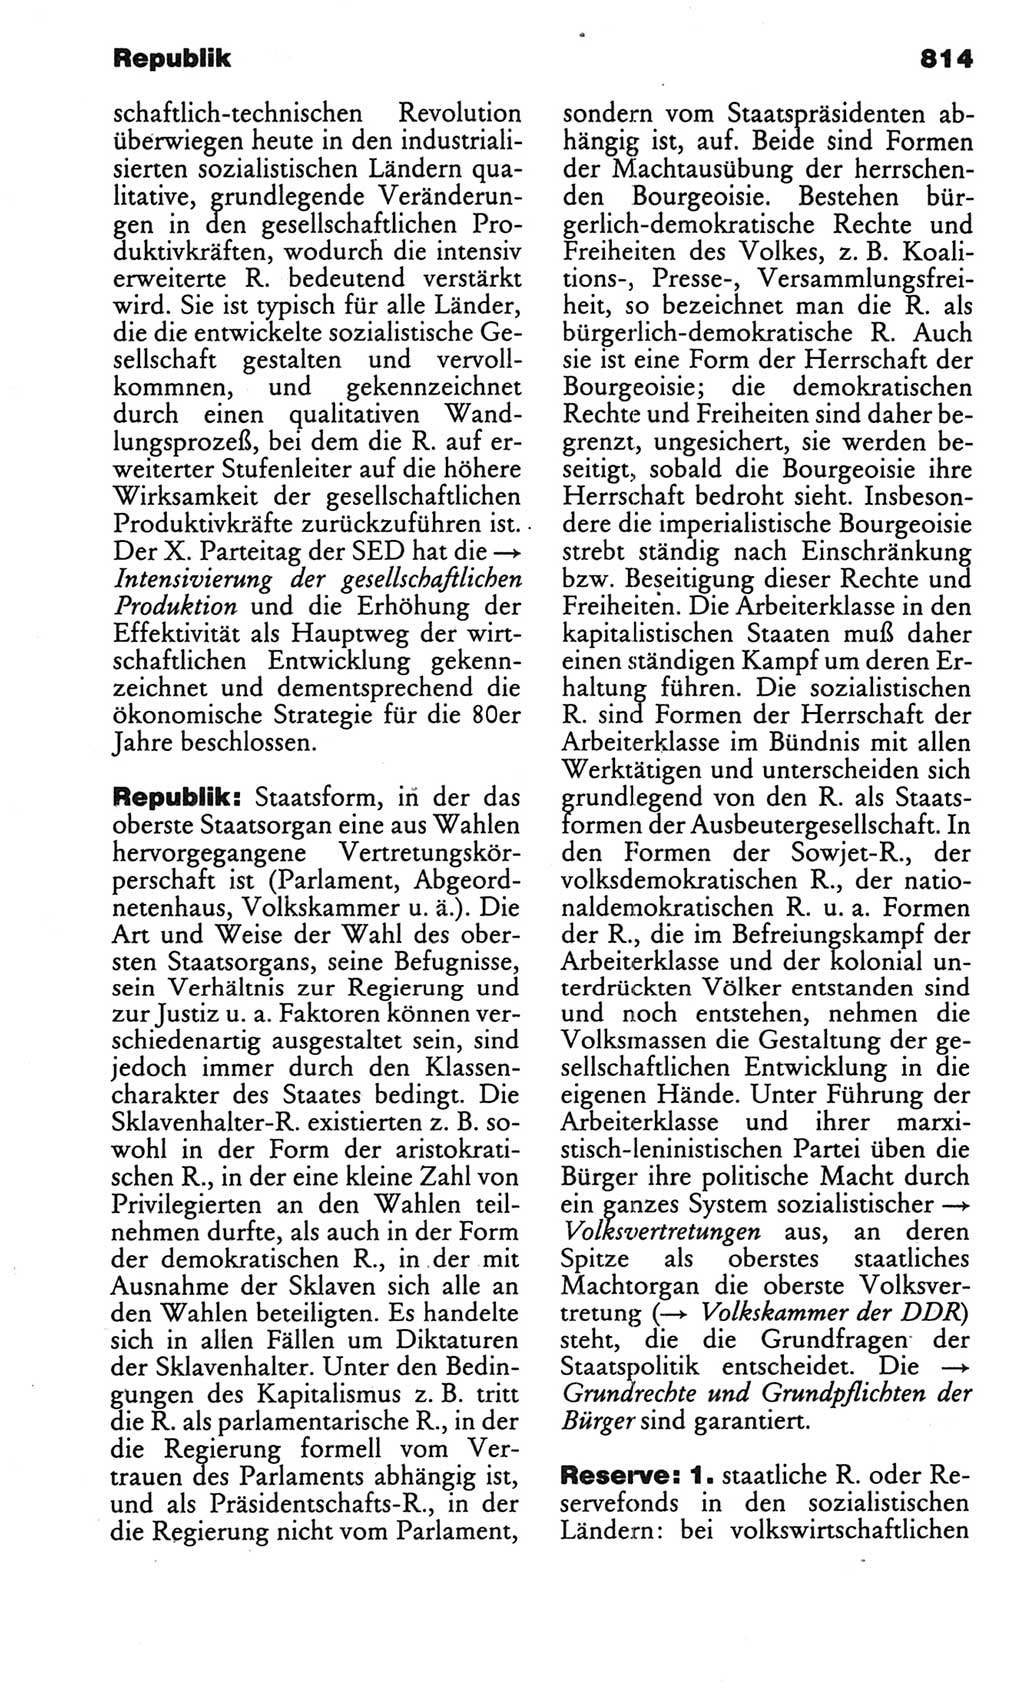 Kleines politisches Wörterbuch [Deutsche Demokratische Republik (DDR)] 1986, Seite 814 (Kl. pol. Wb. DDR 1986, S. 814)